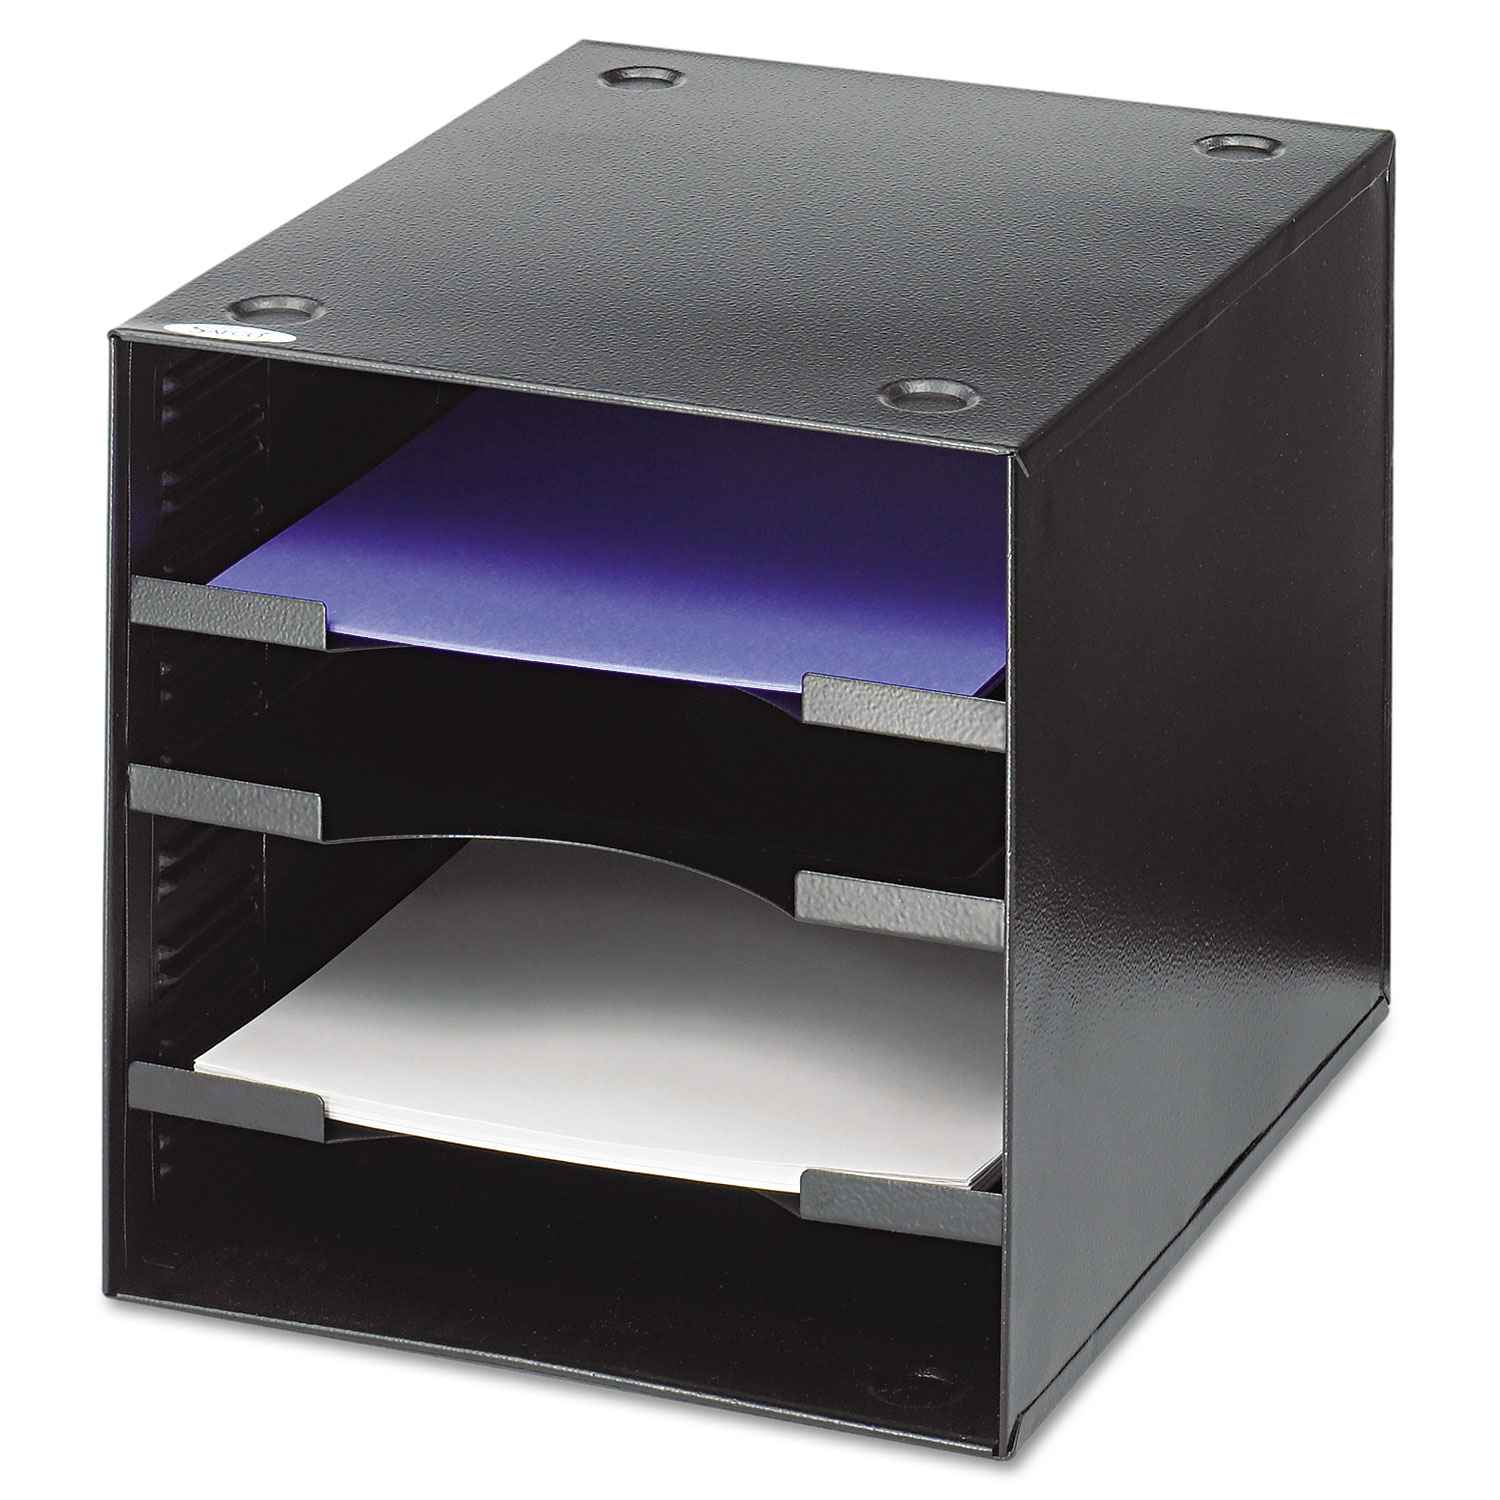  Safco 3112BL Steel Desktop Sorter, Four Compartments, Steel, 11 x 12 x 10, Black (SAF3112BL) 